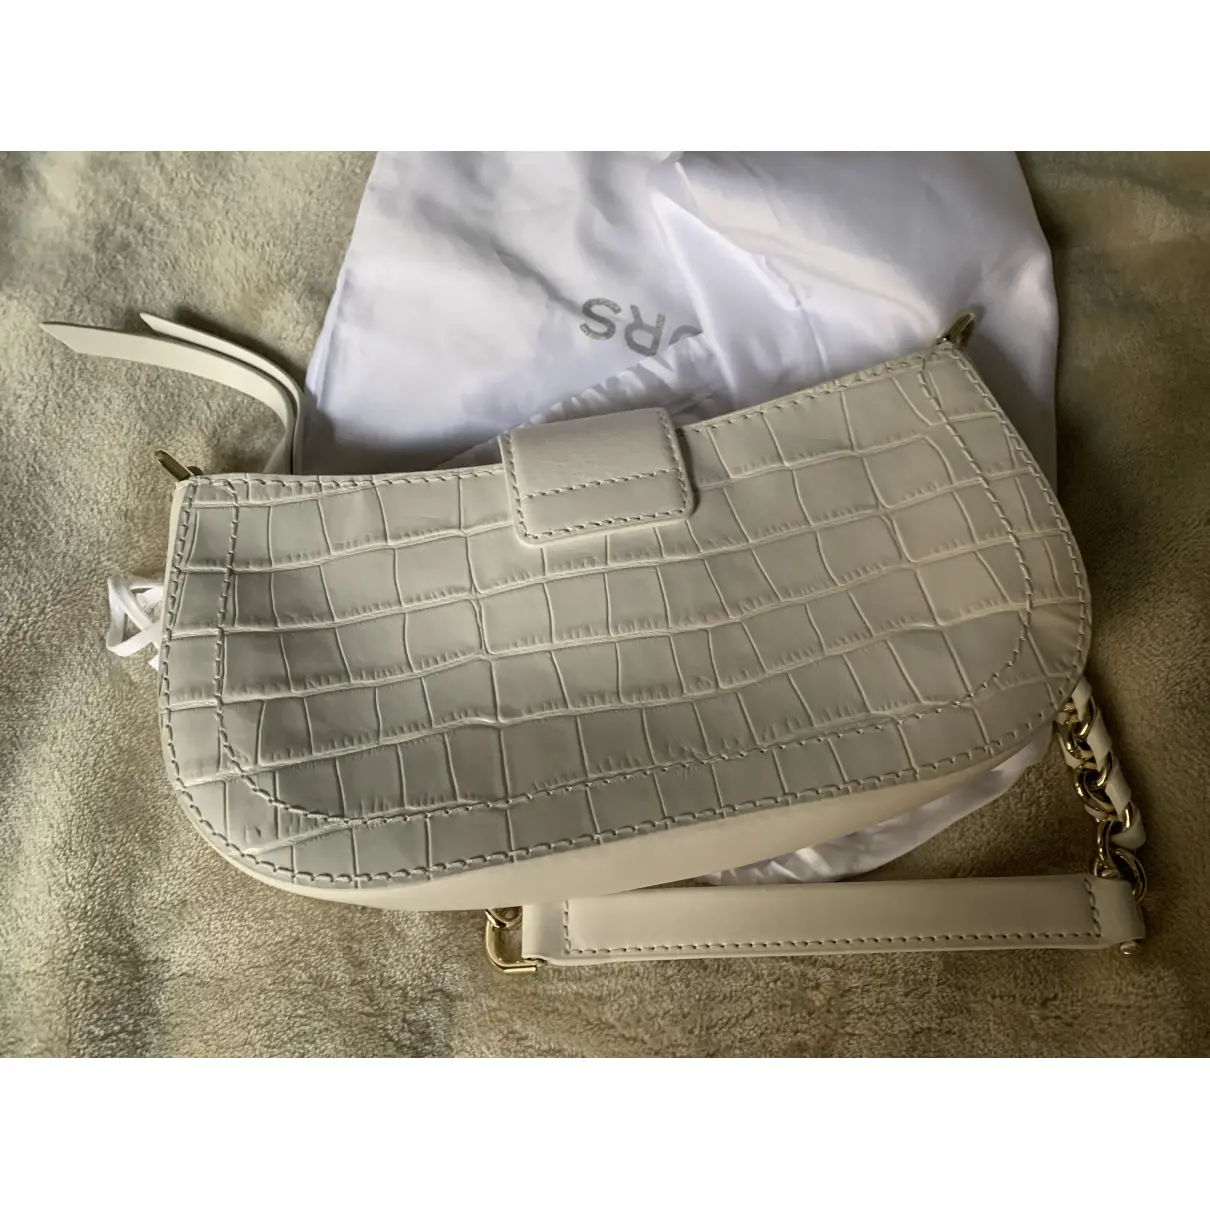 Buy Michael Kors Camden leather handbag online